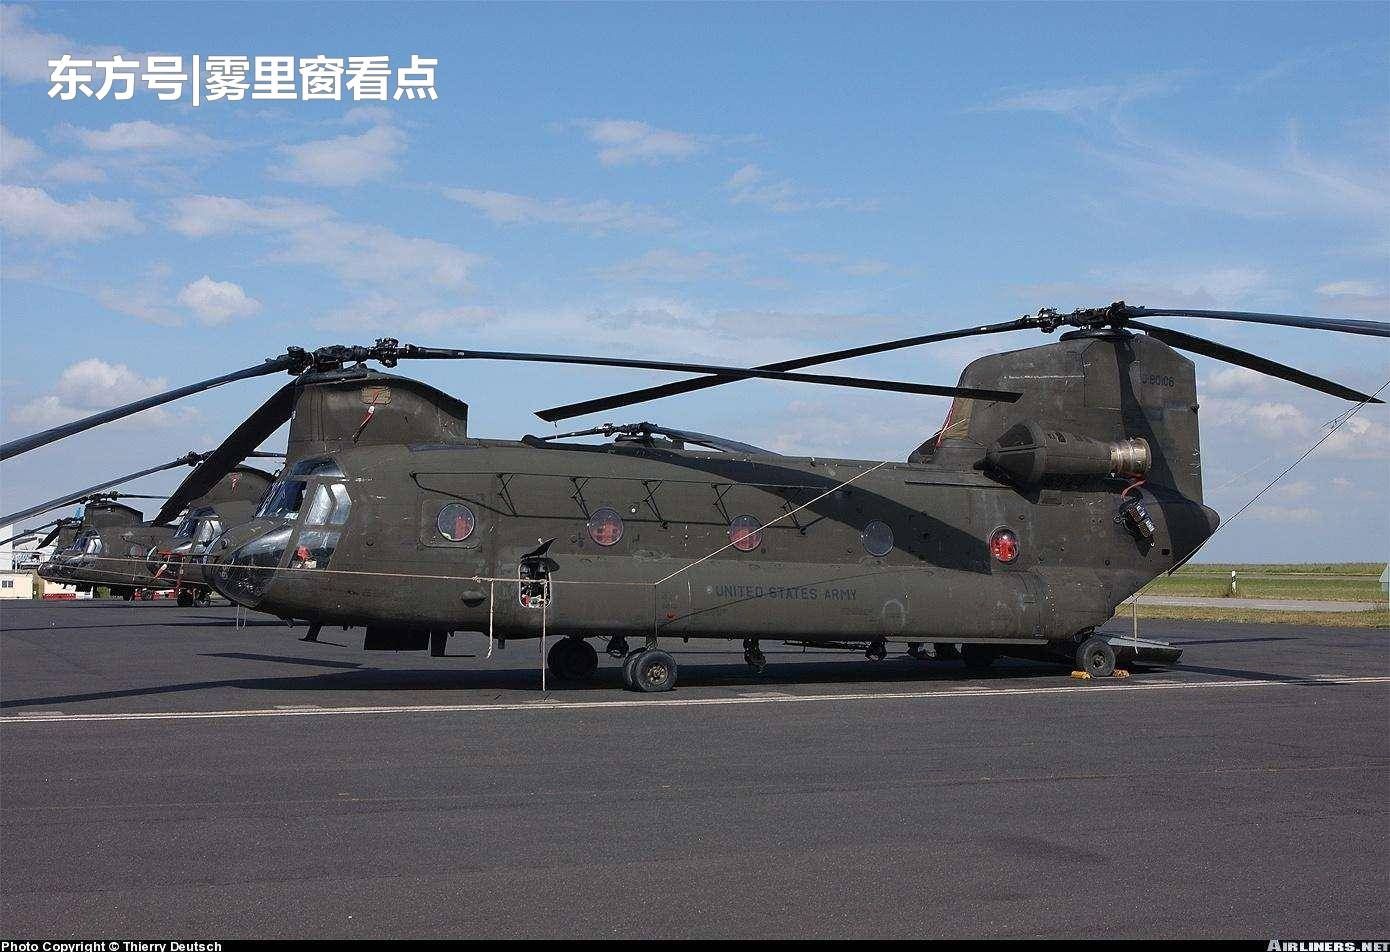 波音运输机原型,海陆空三用直升机"上灯一号,竟是国人设计